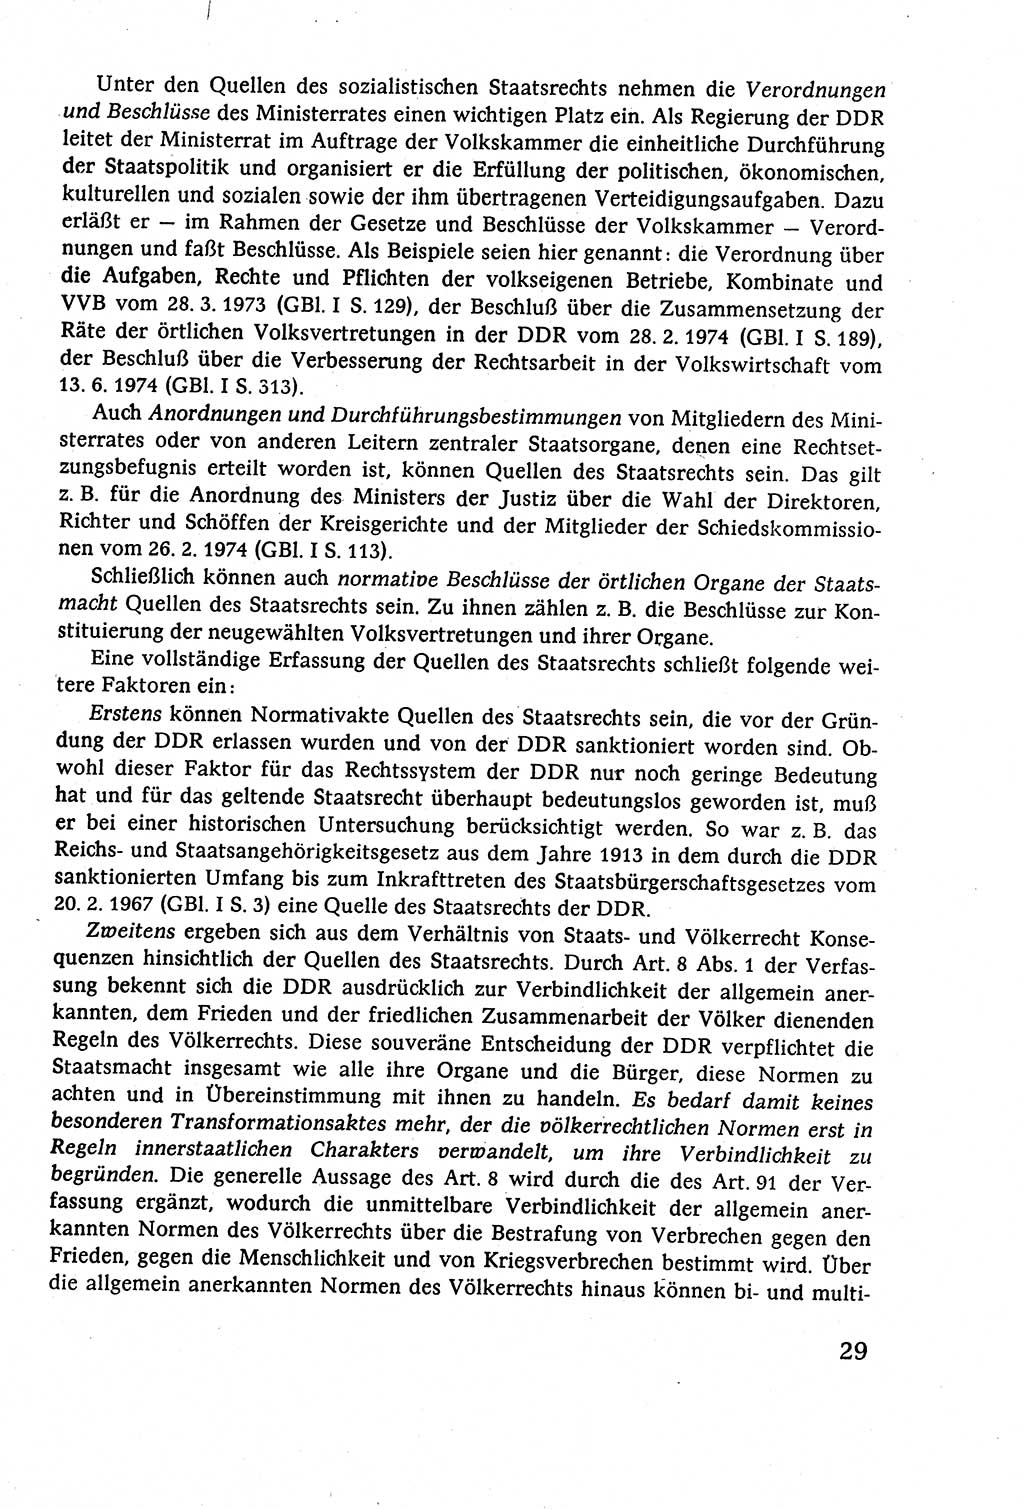 Staatsrecht der DDR (Deutsche Demokratische Republik), Lehrbuch 1977, Seite 29 (St.-R. DDR Lb. 1977, S. 29)